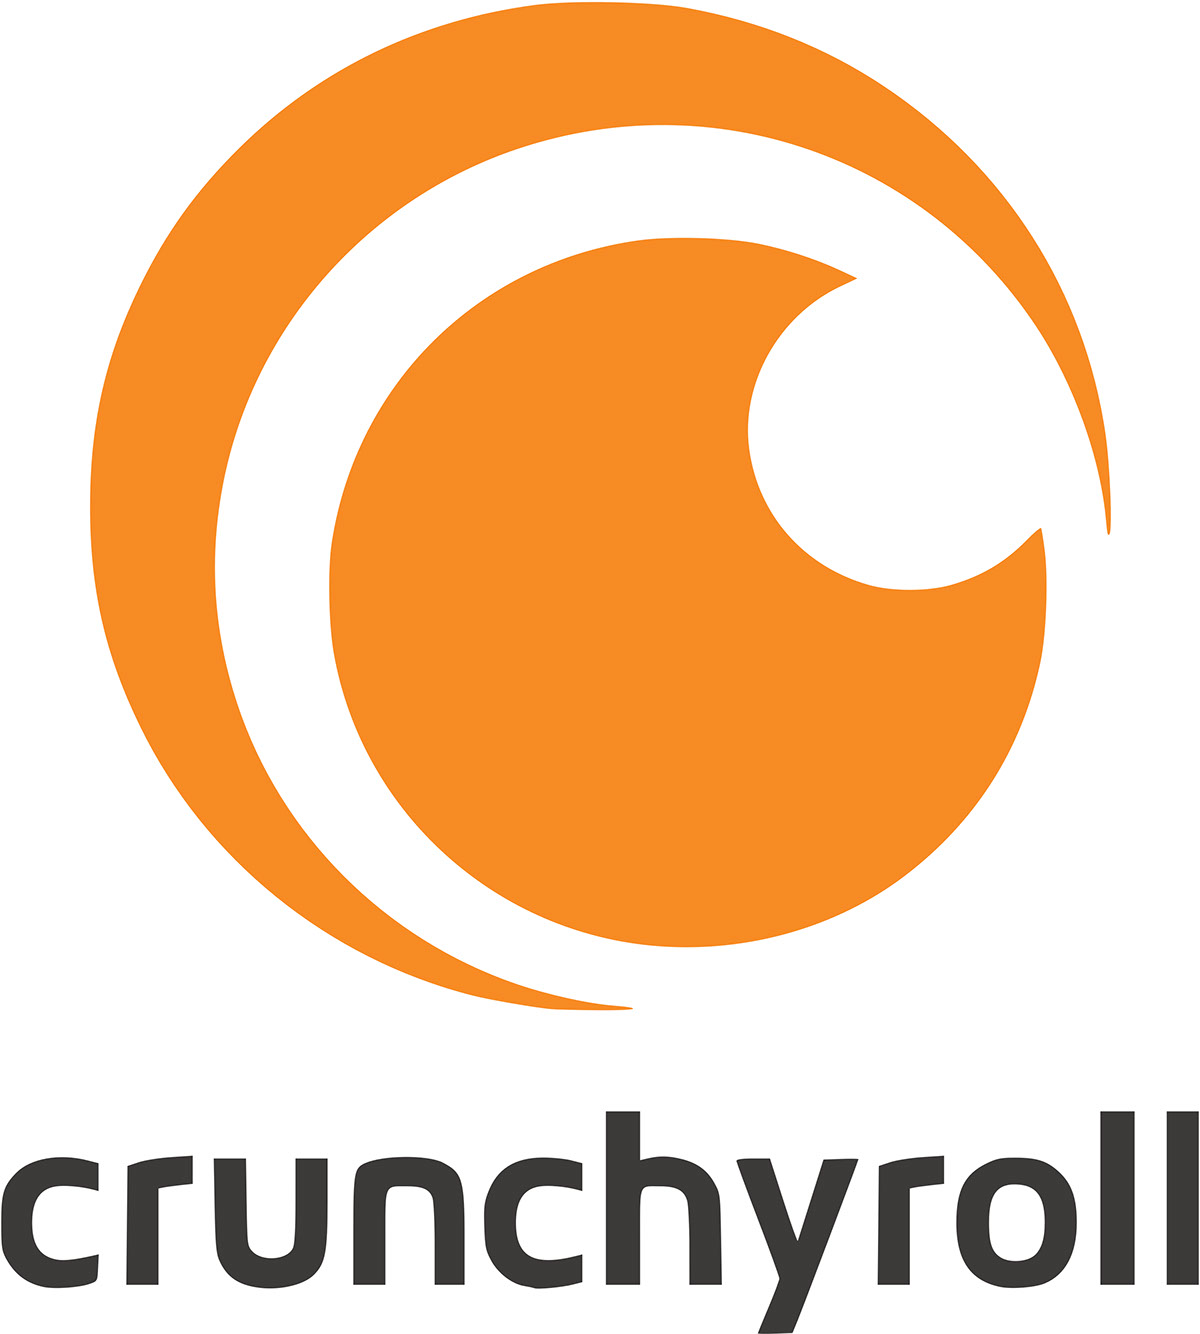 Crunchyroll rendition image